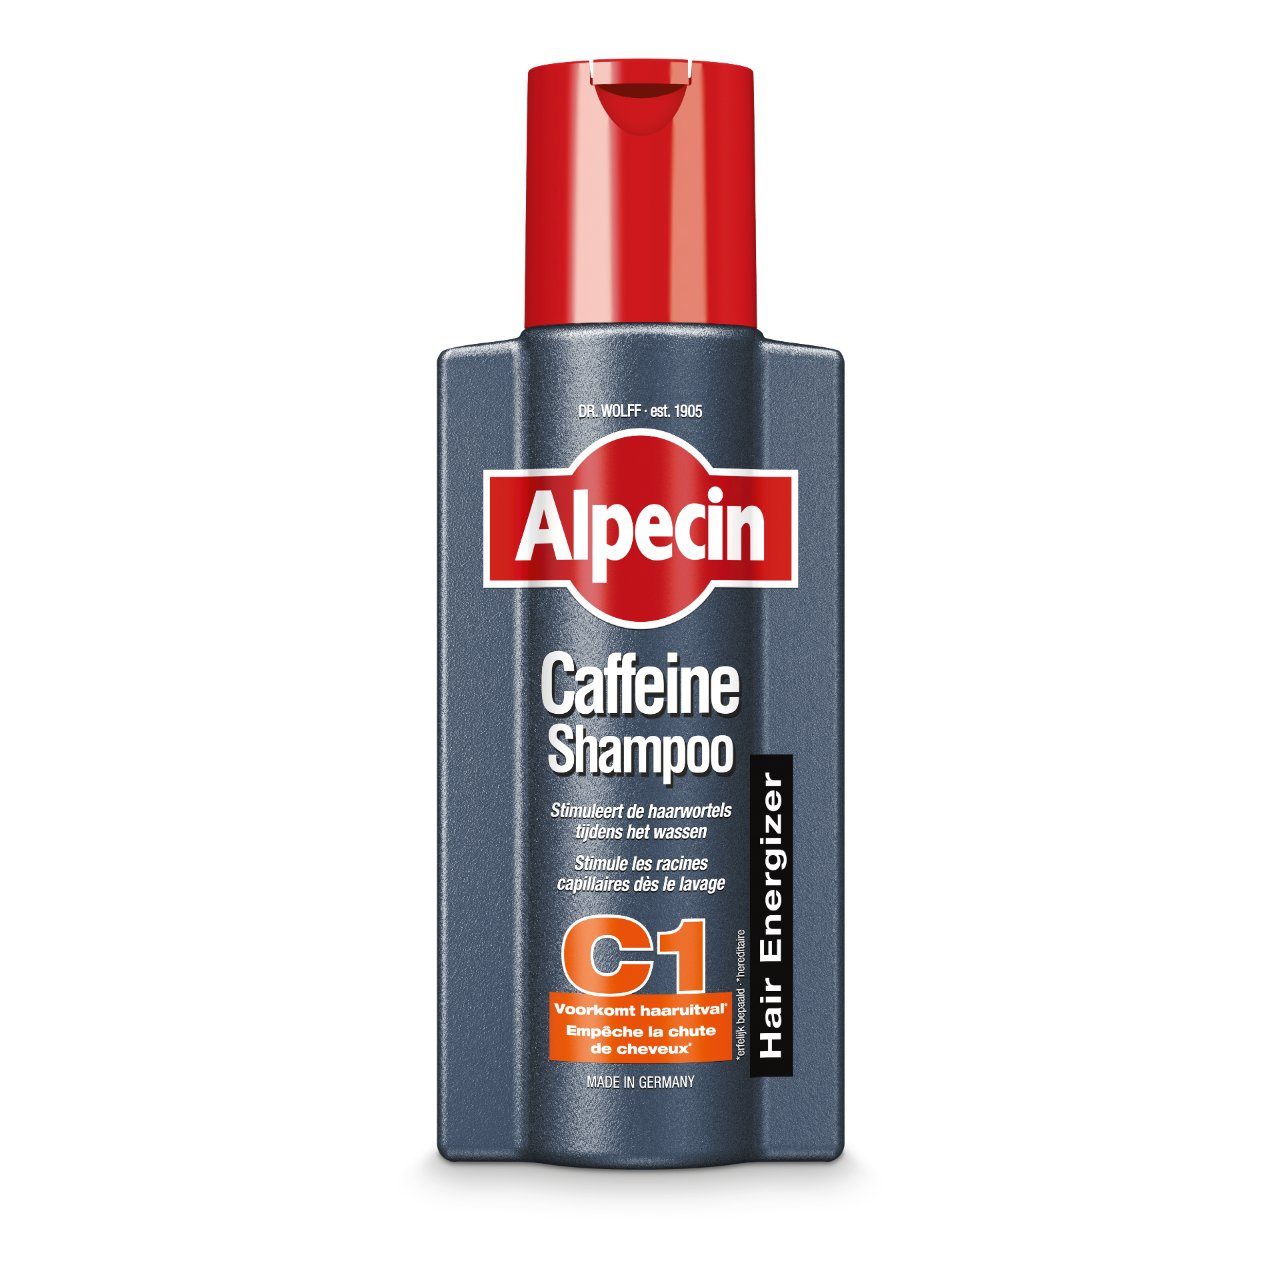 Cafeïne-shampoo c1